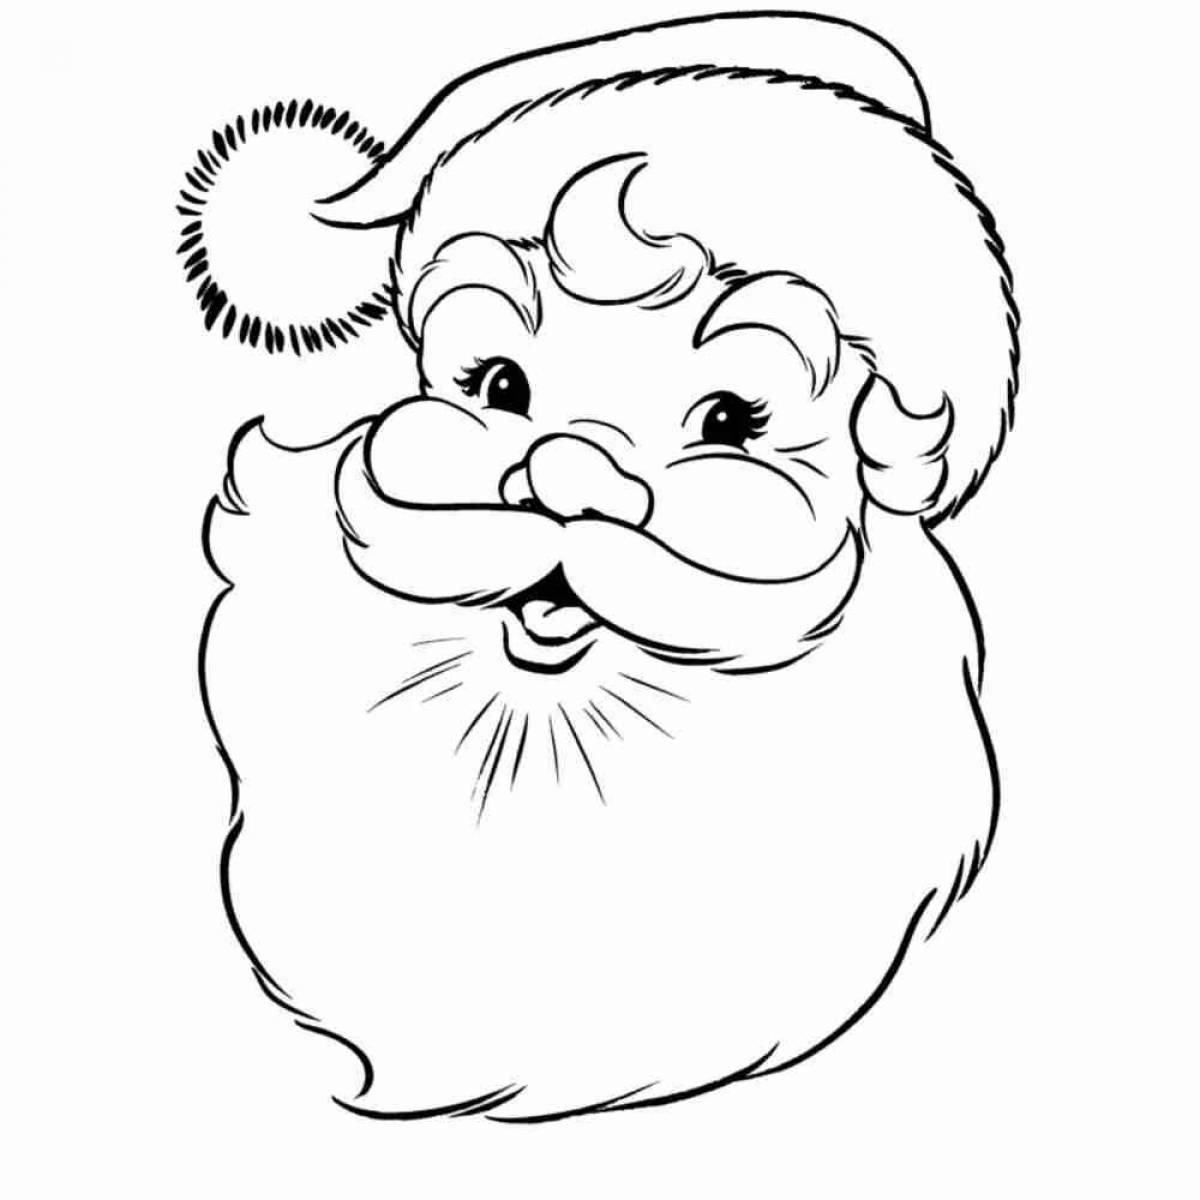 Humorous santa face coloring page